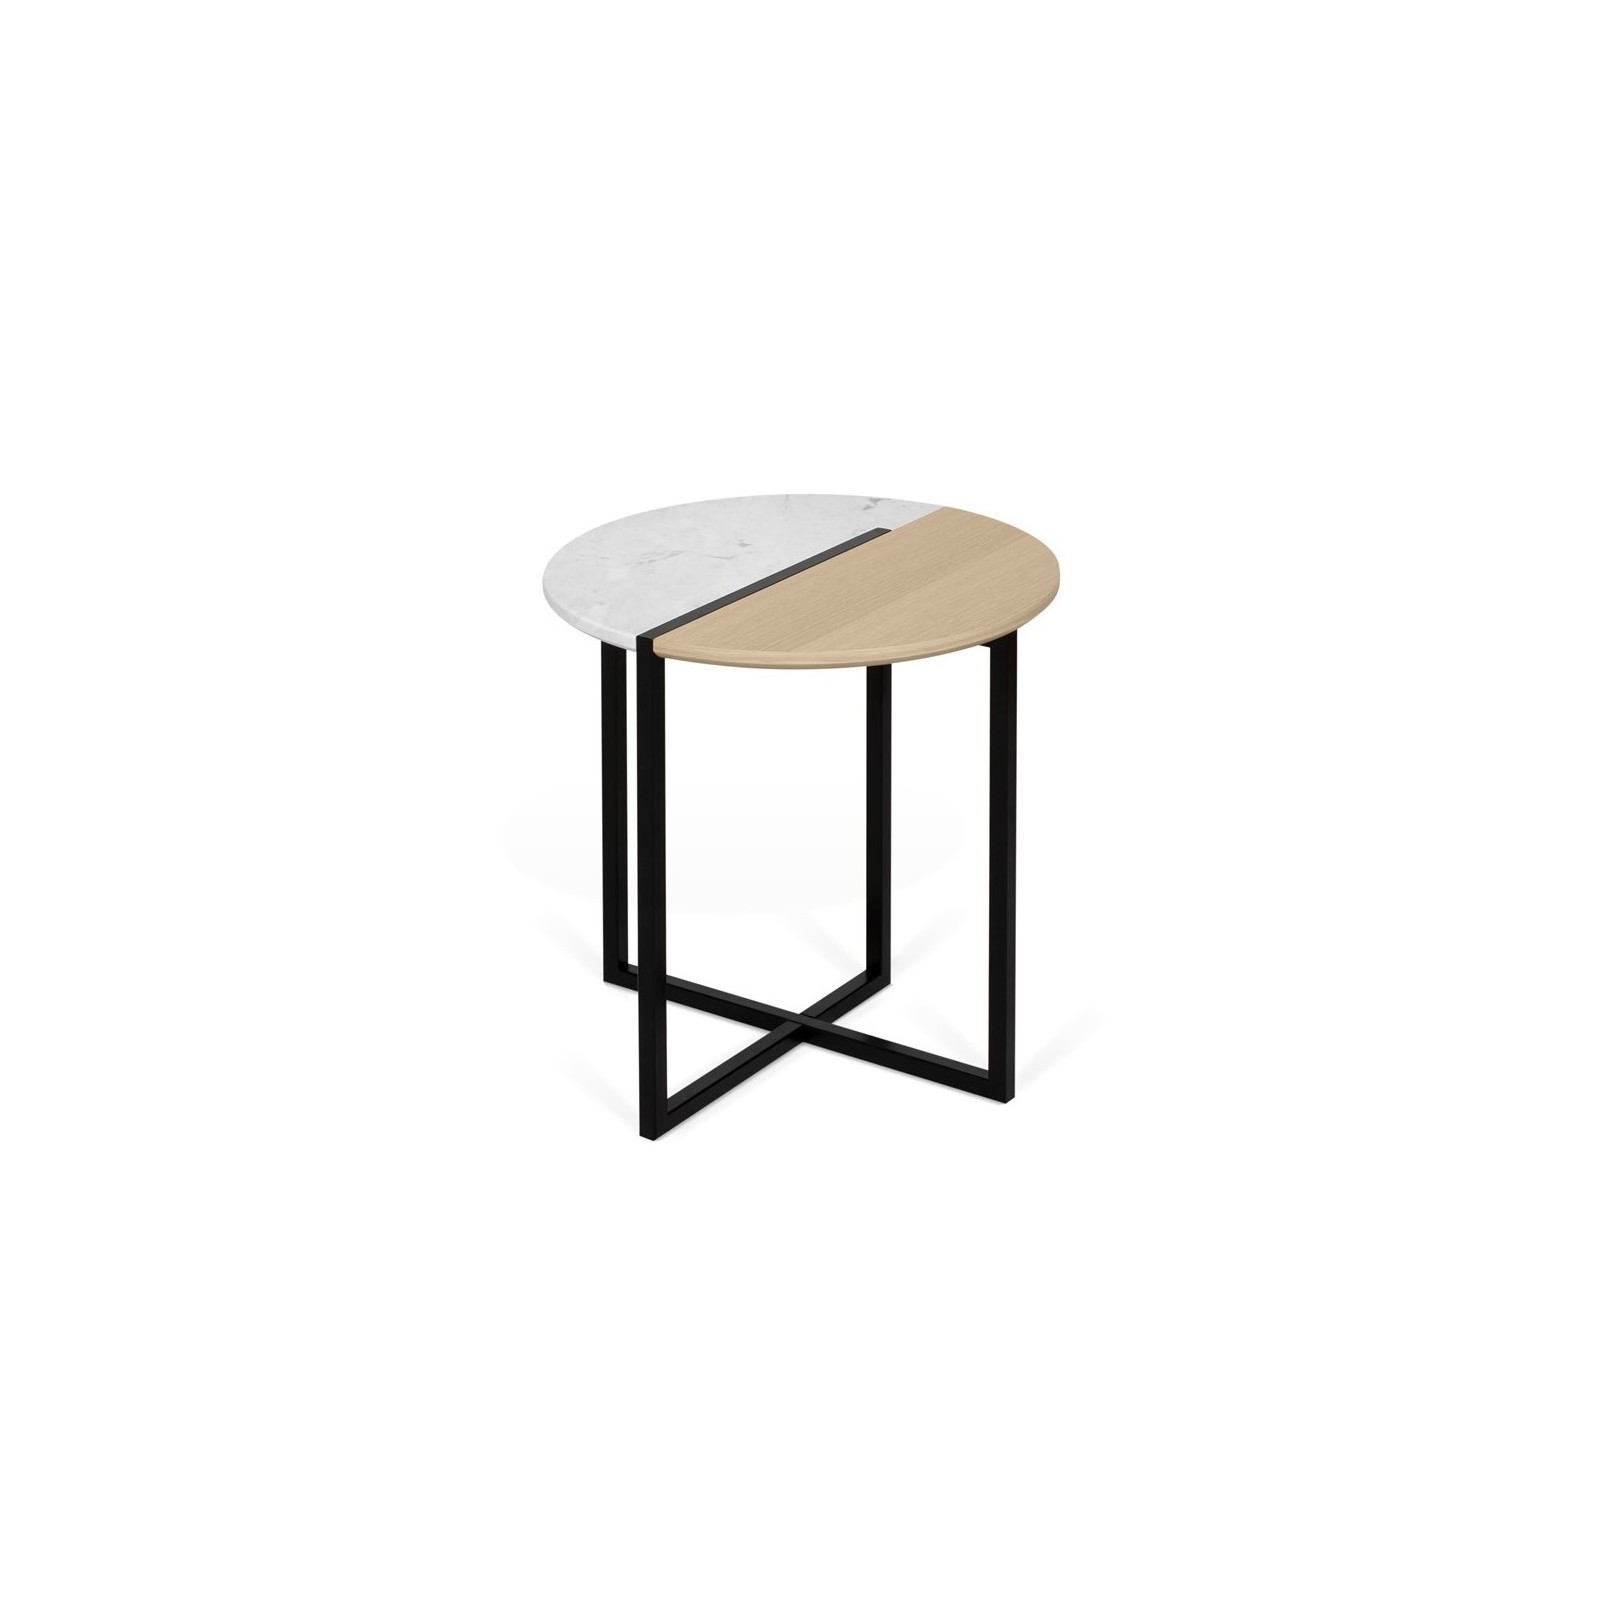 Mezzo 50 Coffee Table - Arne Concept